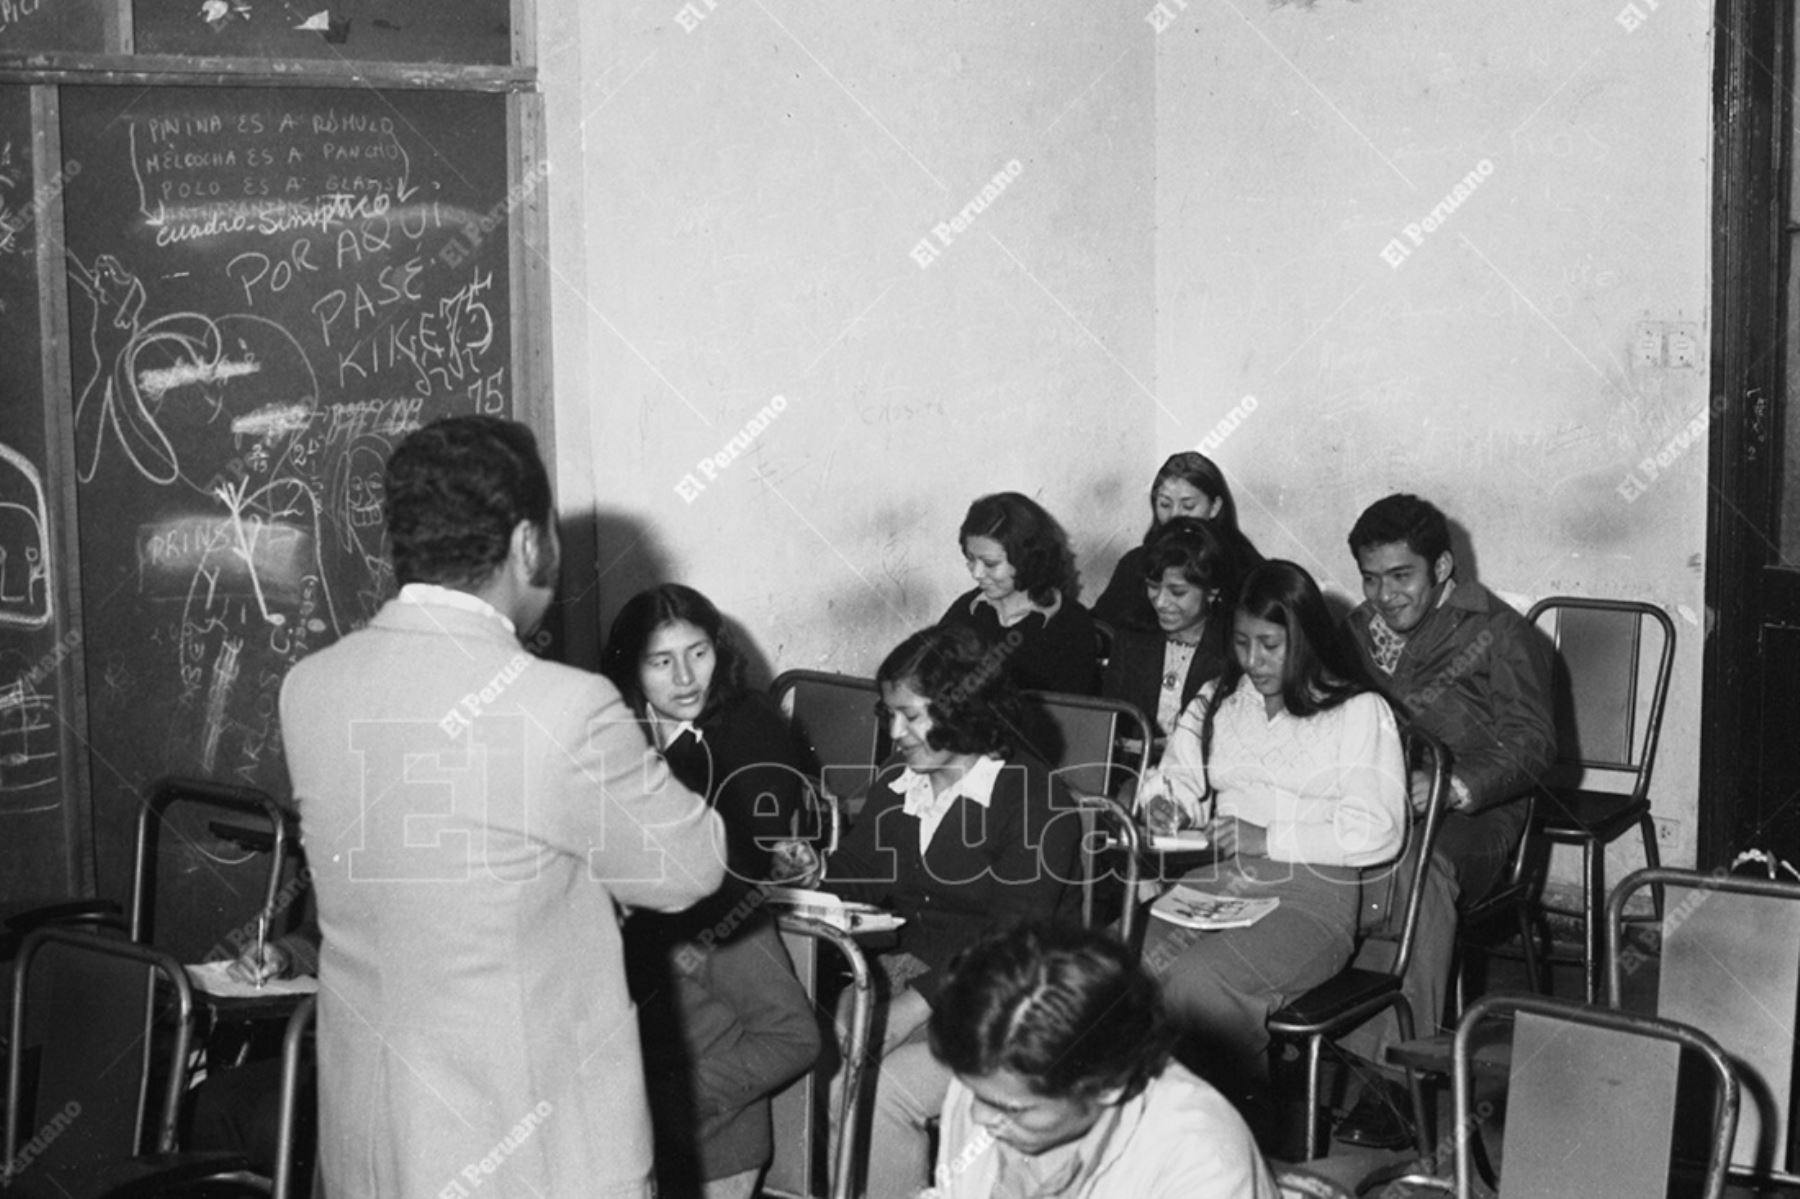 Lima - 2 agosto 1975 / Clases en la academia preuniversitaria Christian Barnard. Foto: Archivo Histórico de El Peruano / Oswaldo Sánchez